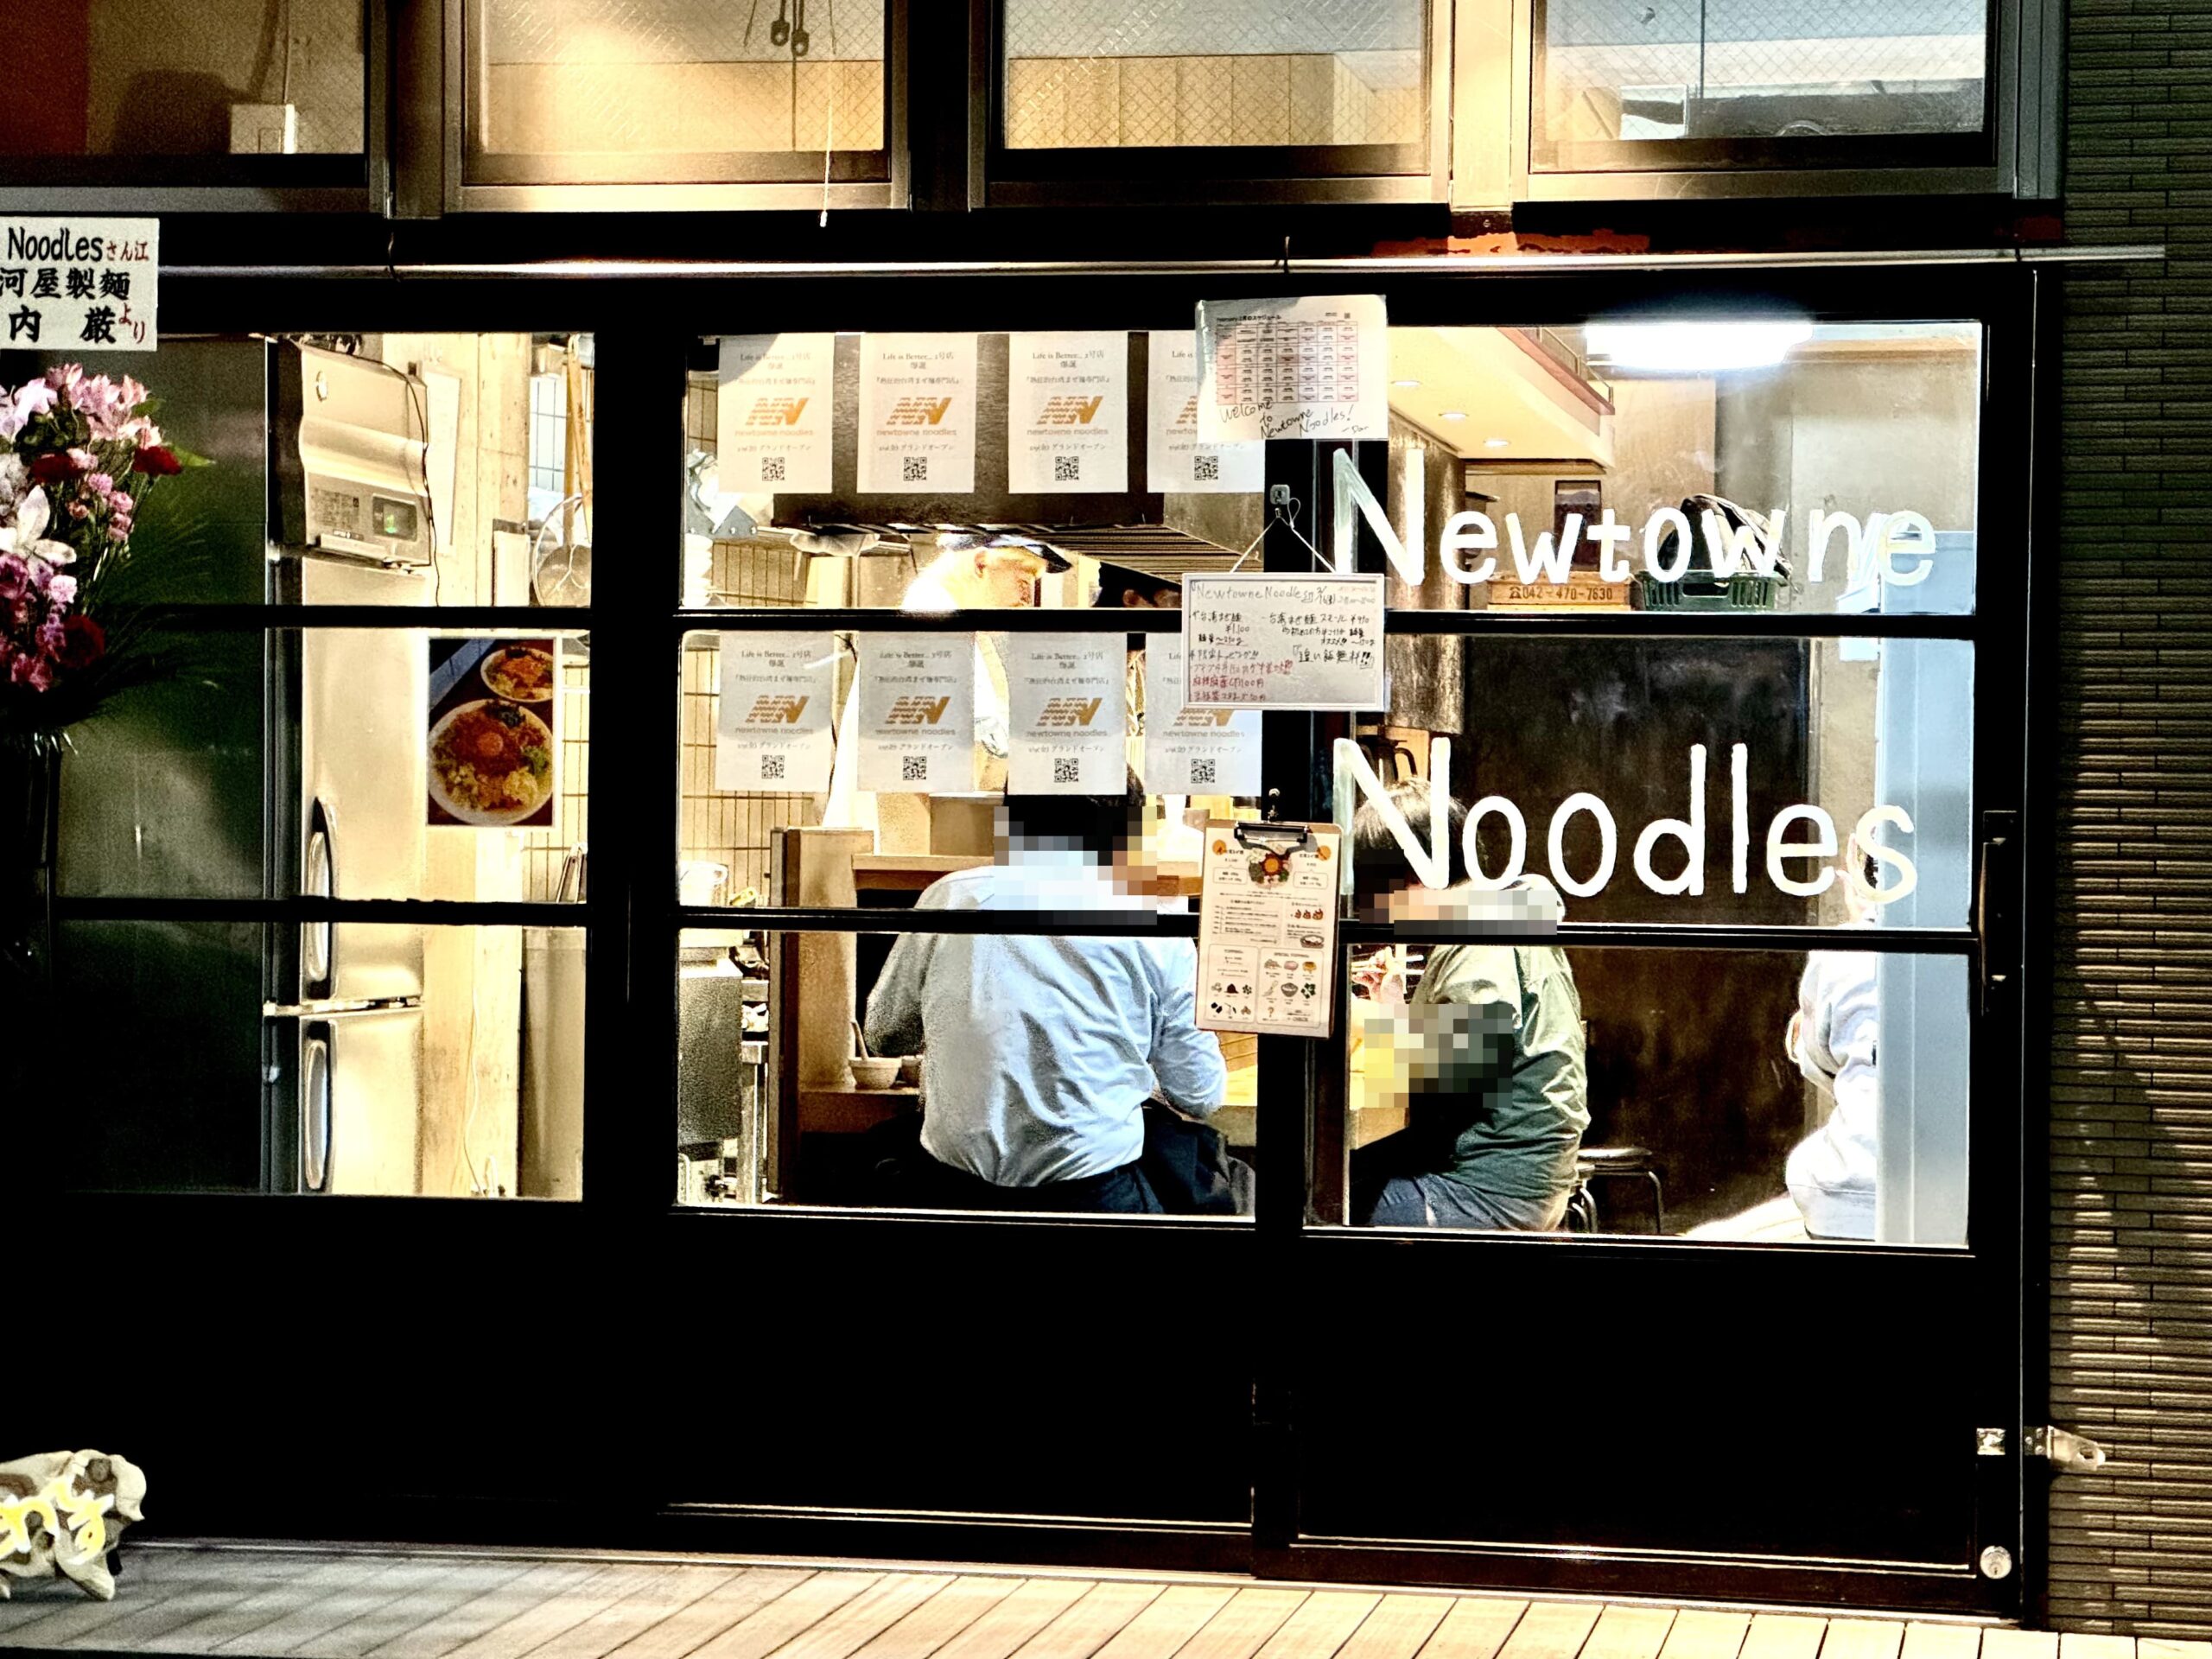 Newtowne Noodles